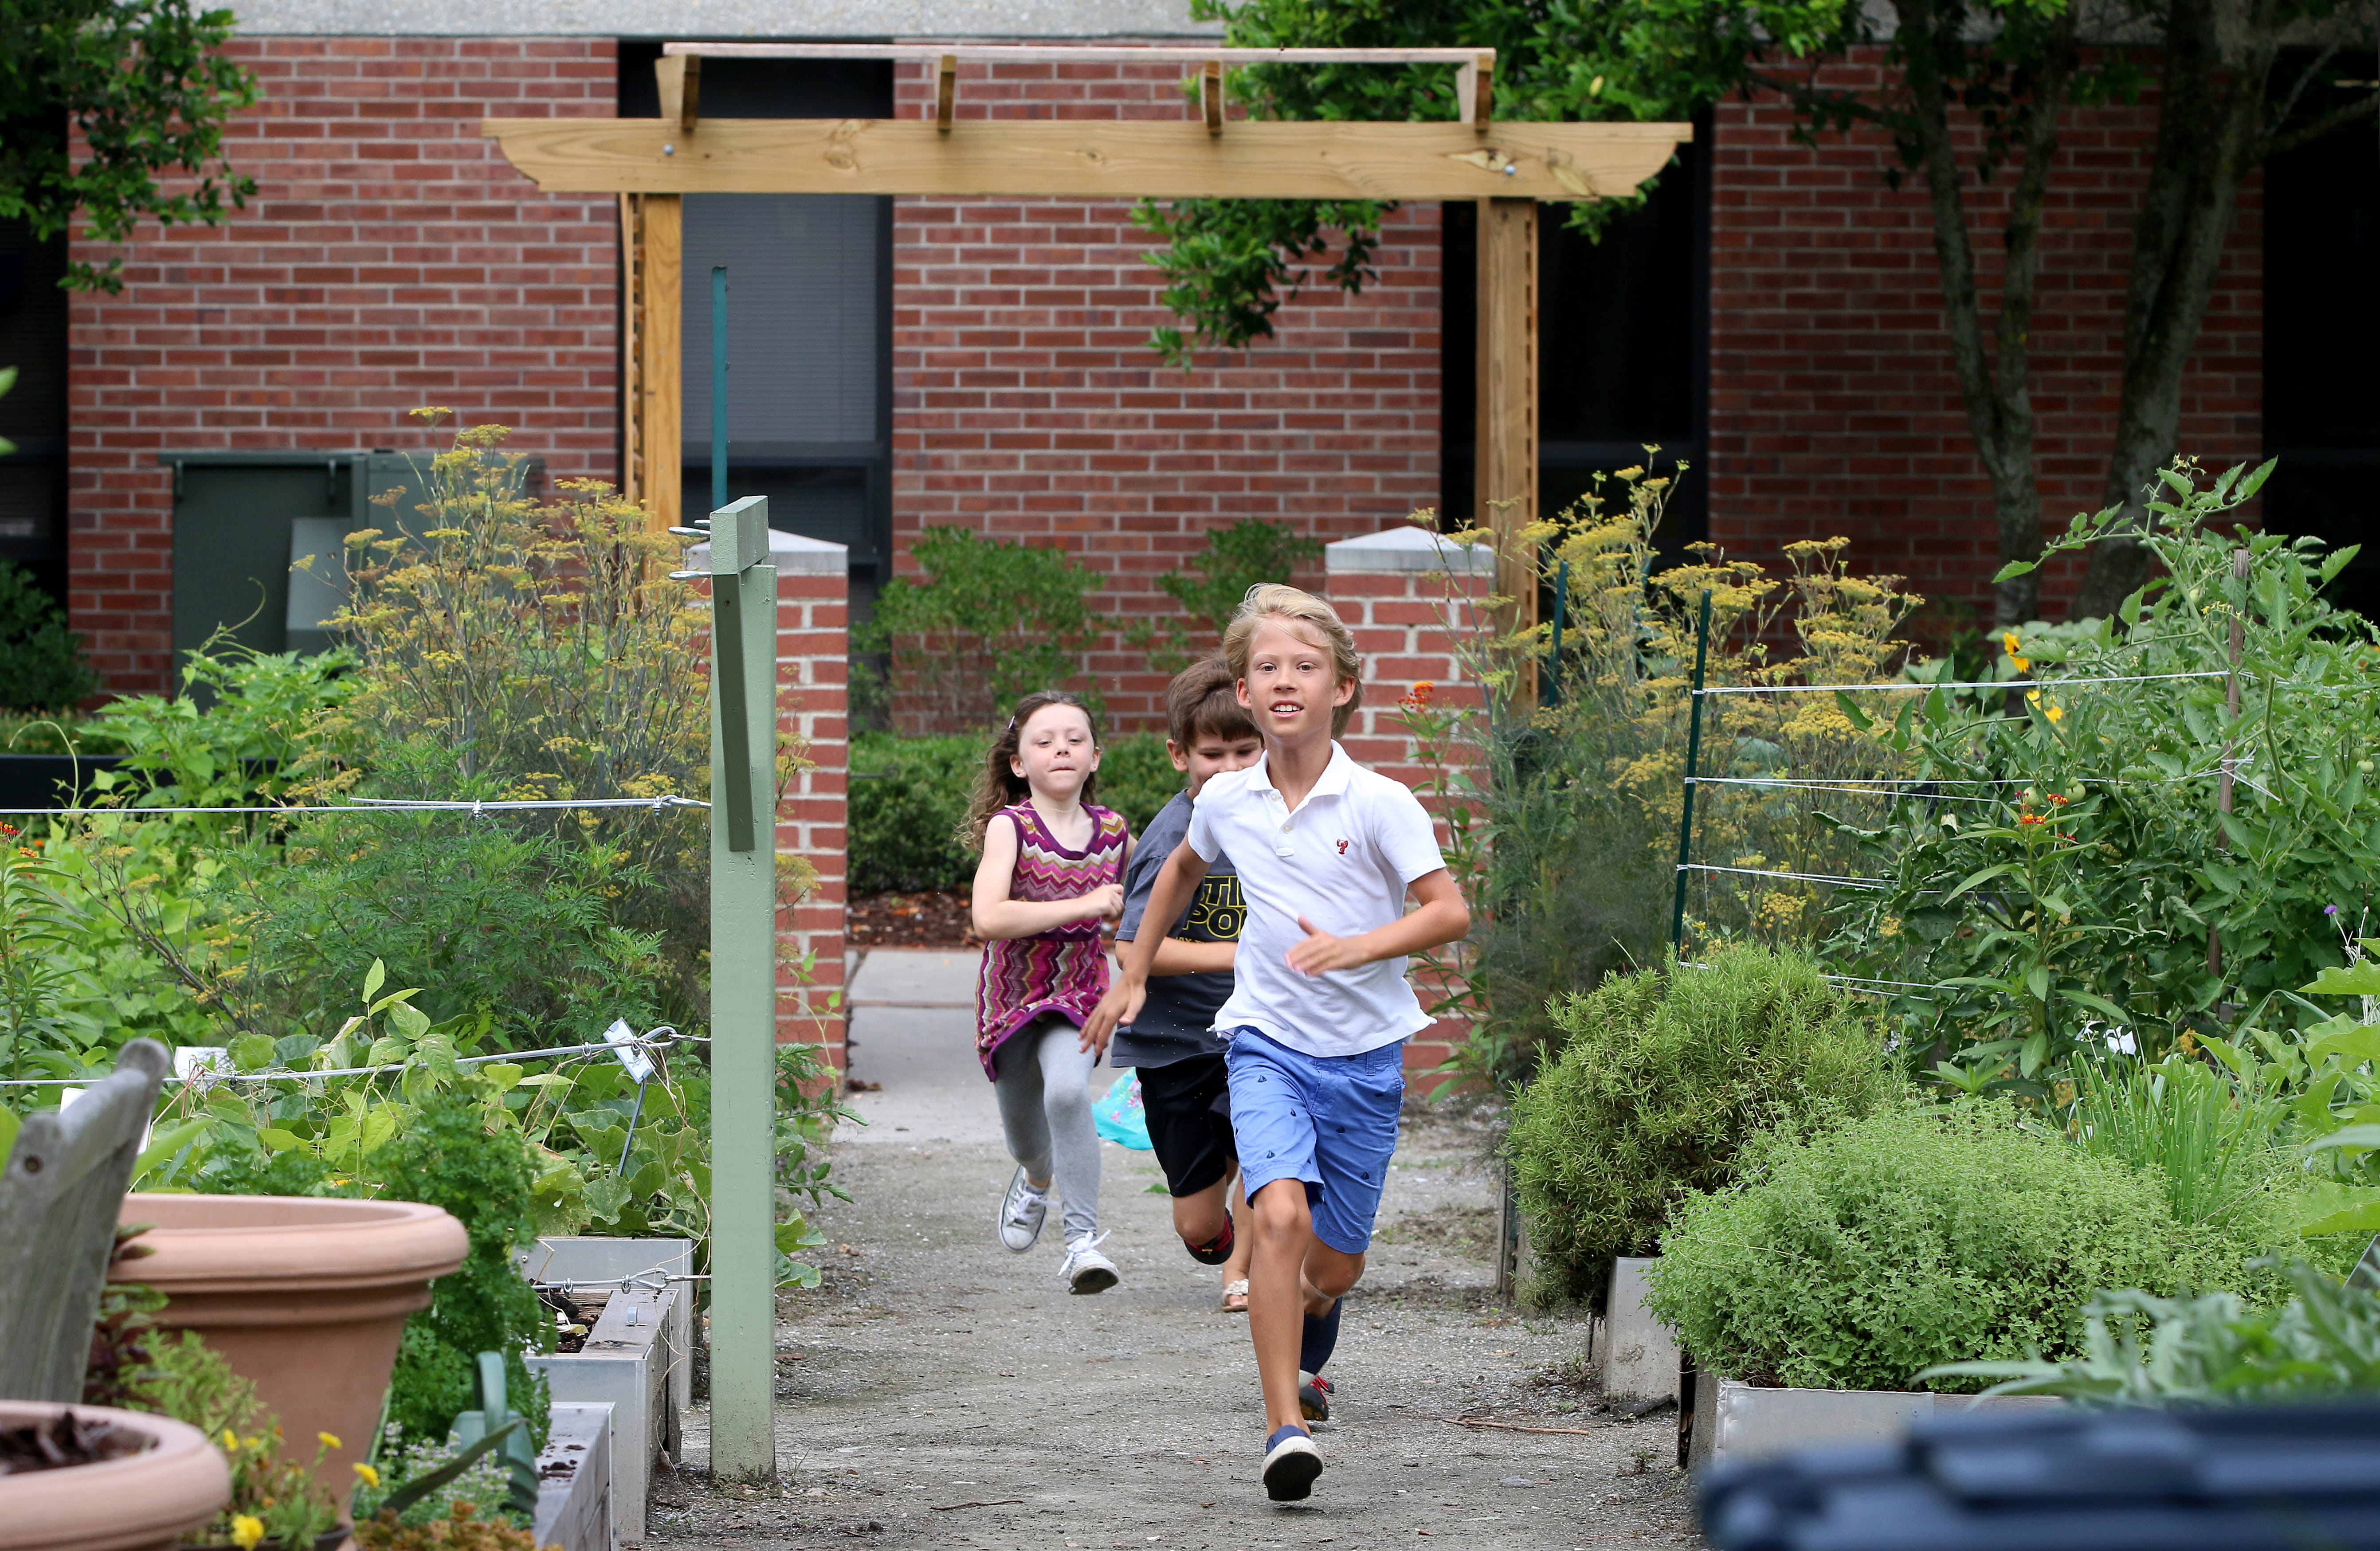 Children at school running down a garden path, courtesy of Boeing Center for Children's Wellness